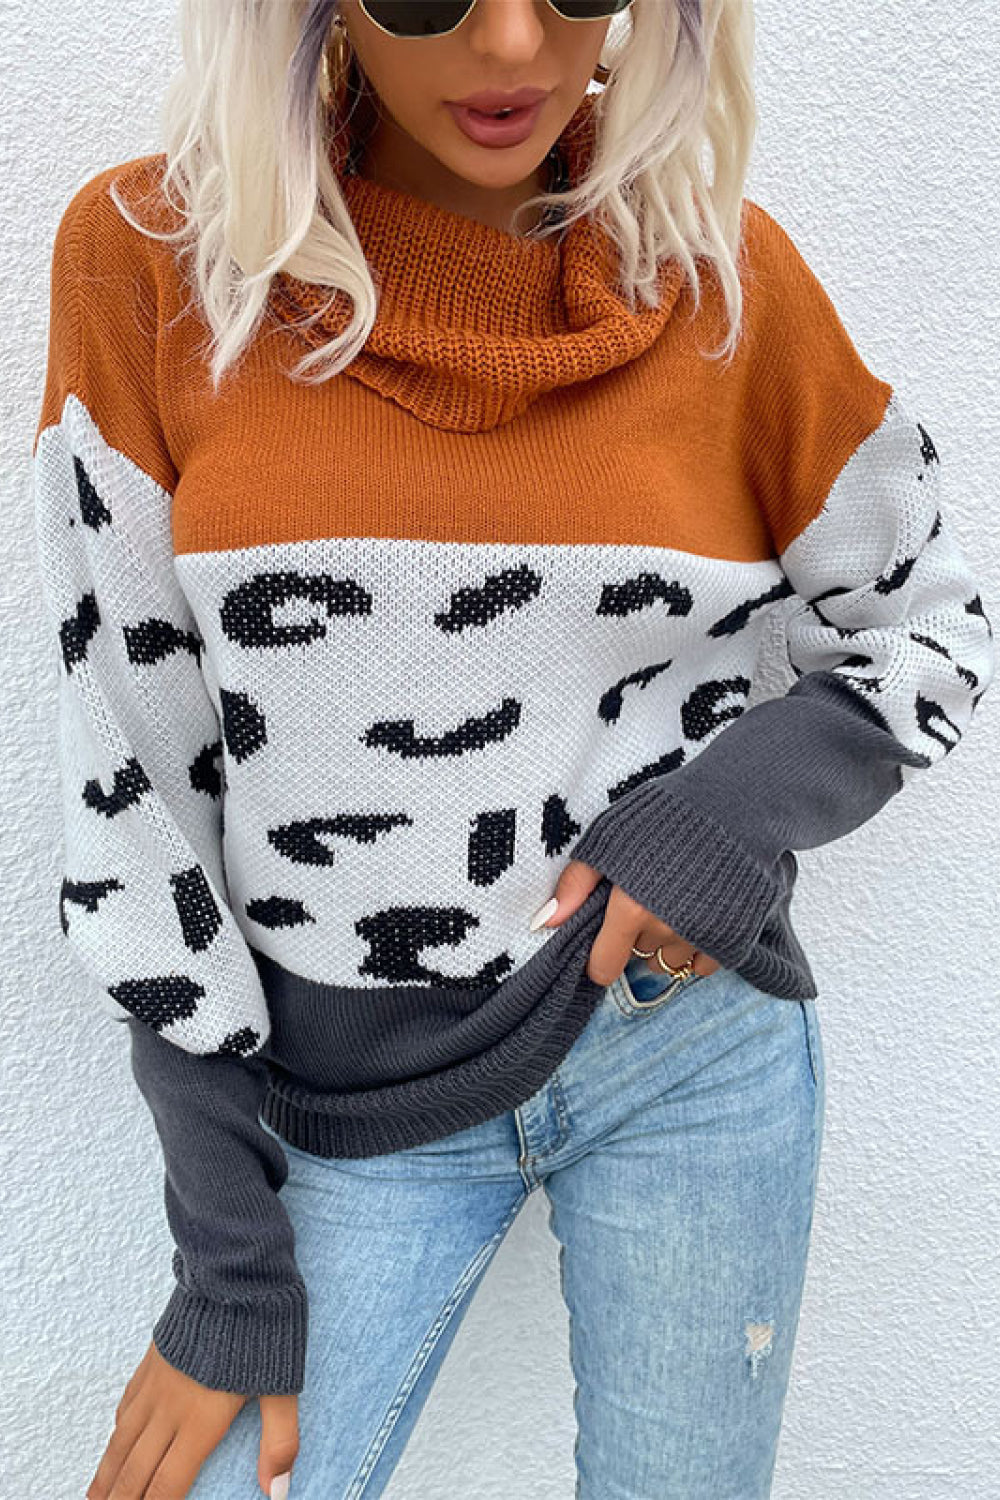 Save My Spot Leopard Color Block Turtleneck Sweater   